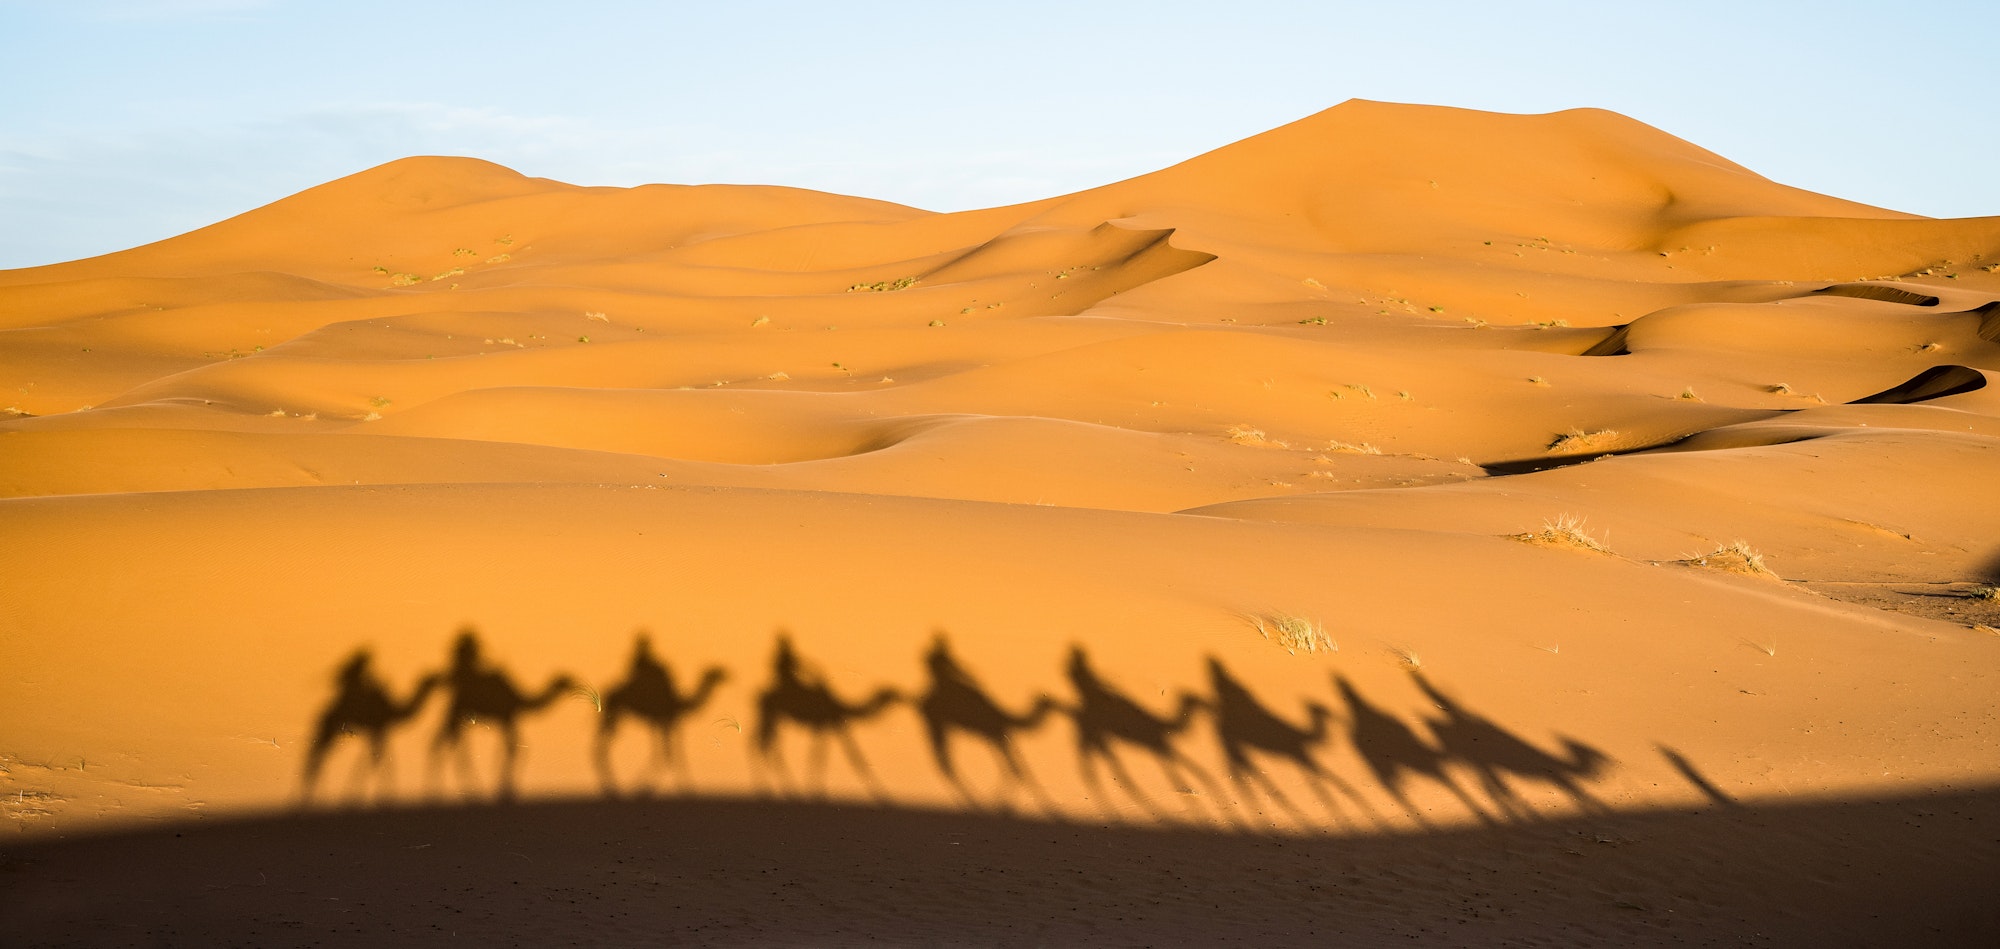 Shadow of tourists caravan riding dromedaries through sand dunes in Sahara desert